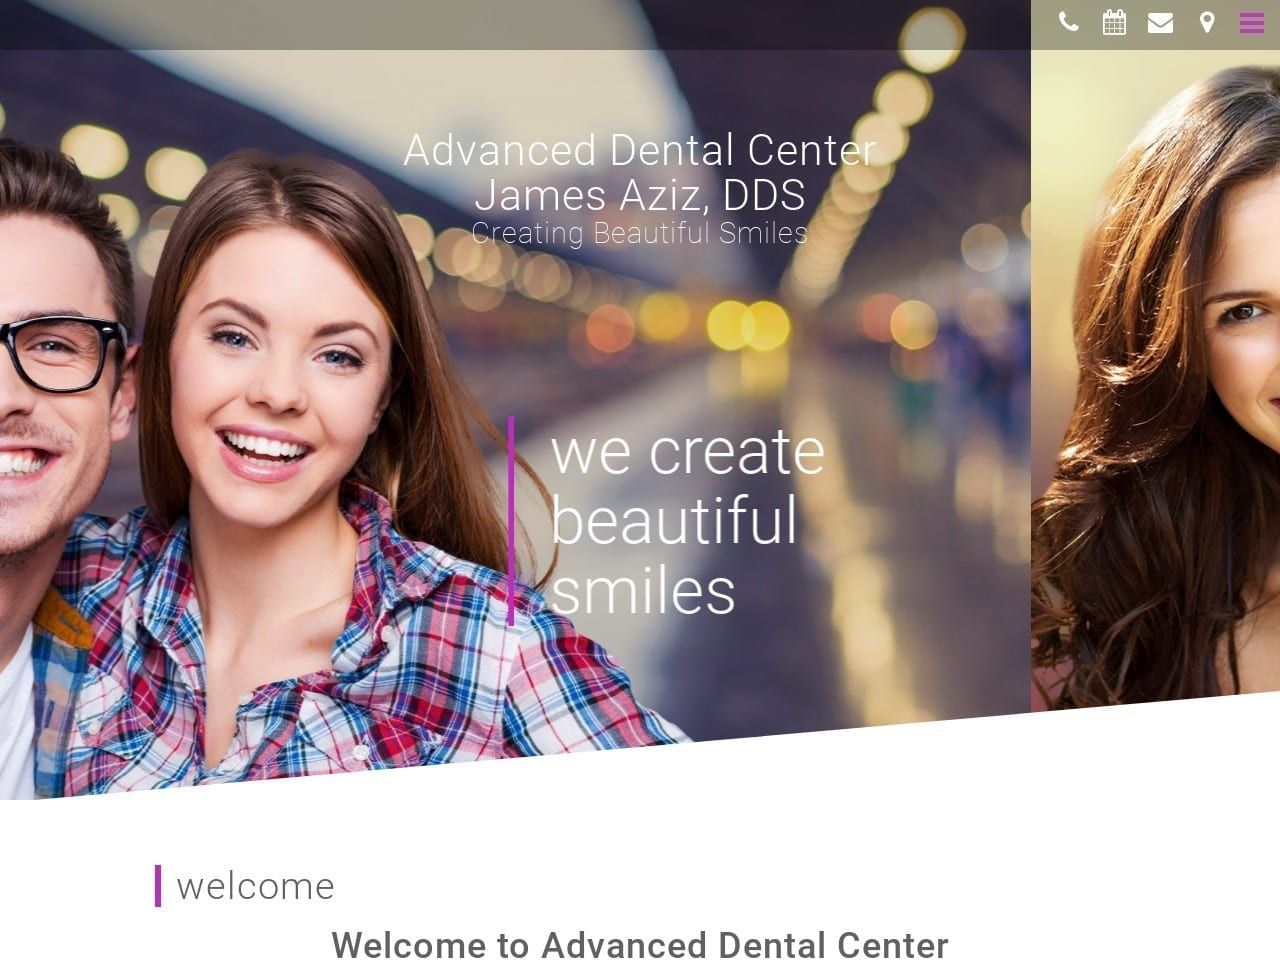 Advanced Dental Center Aziz James DDS Website Screenshot from advanceddentalcenter.org